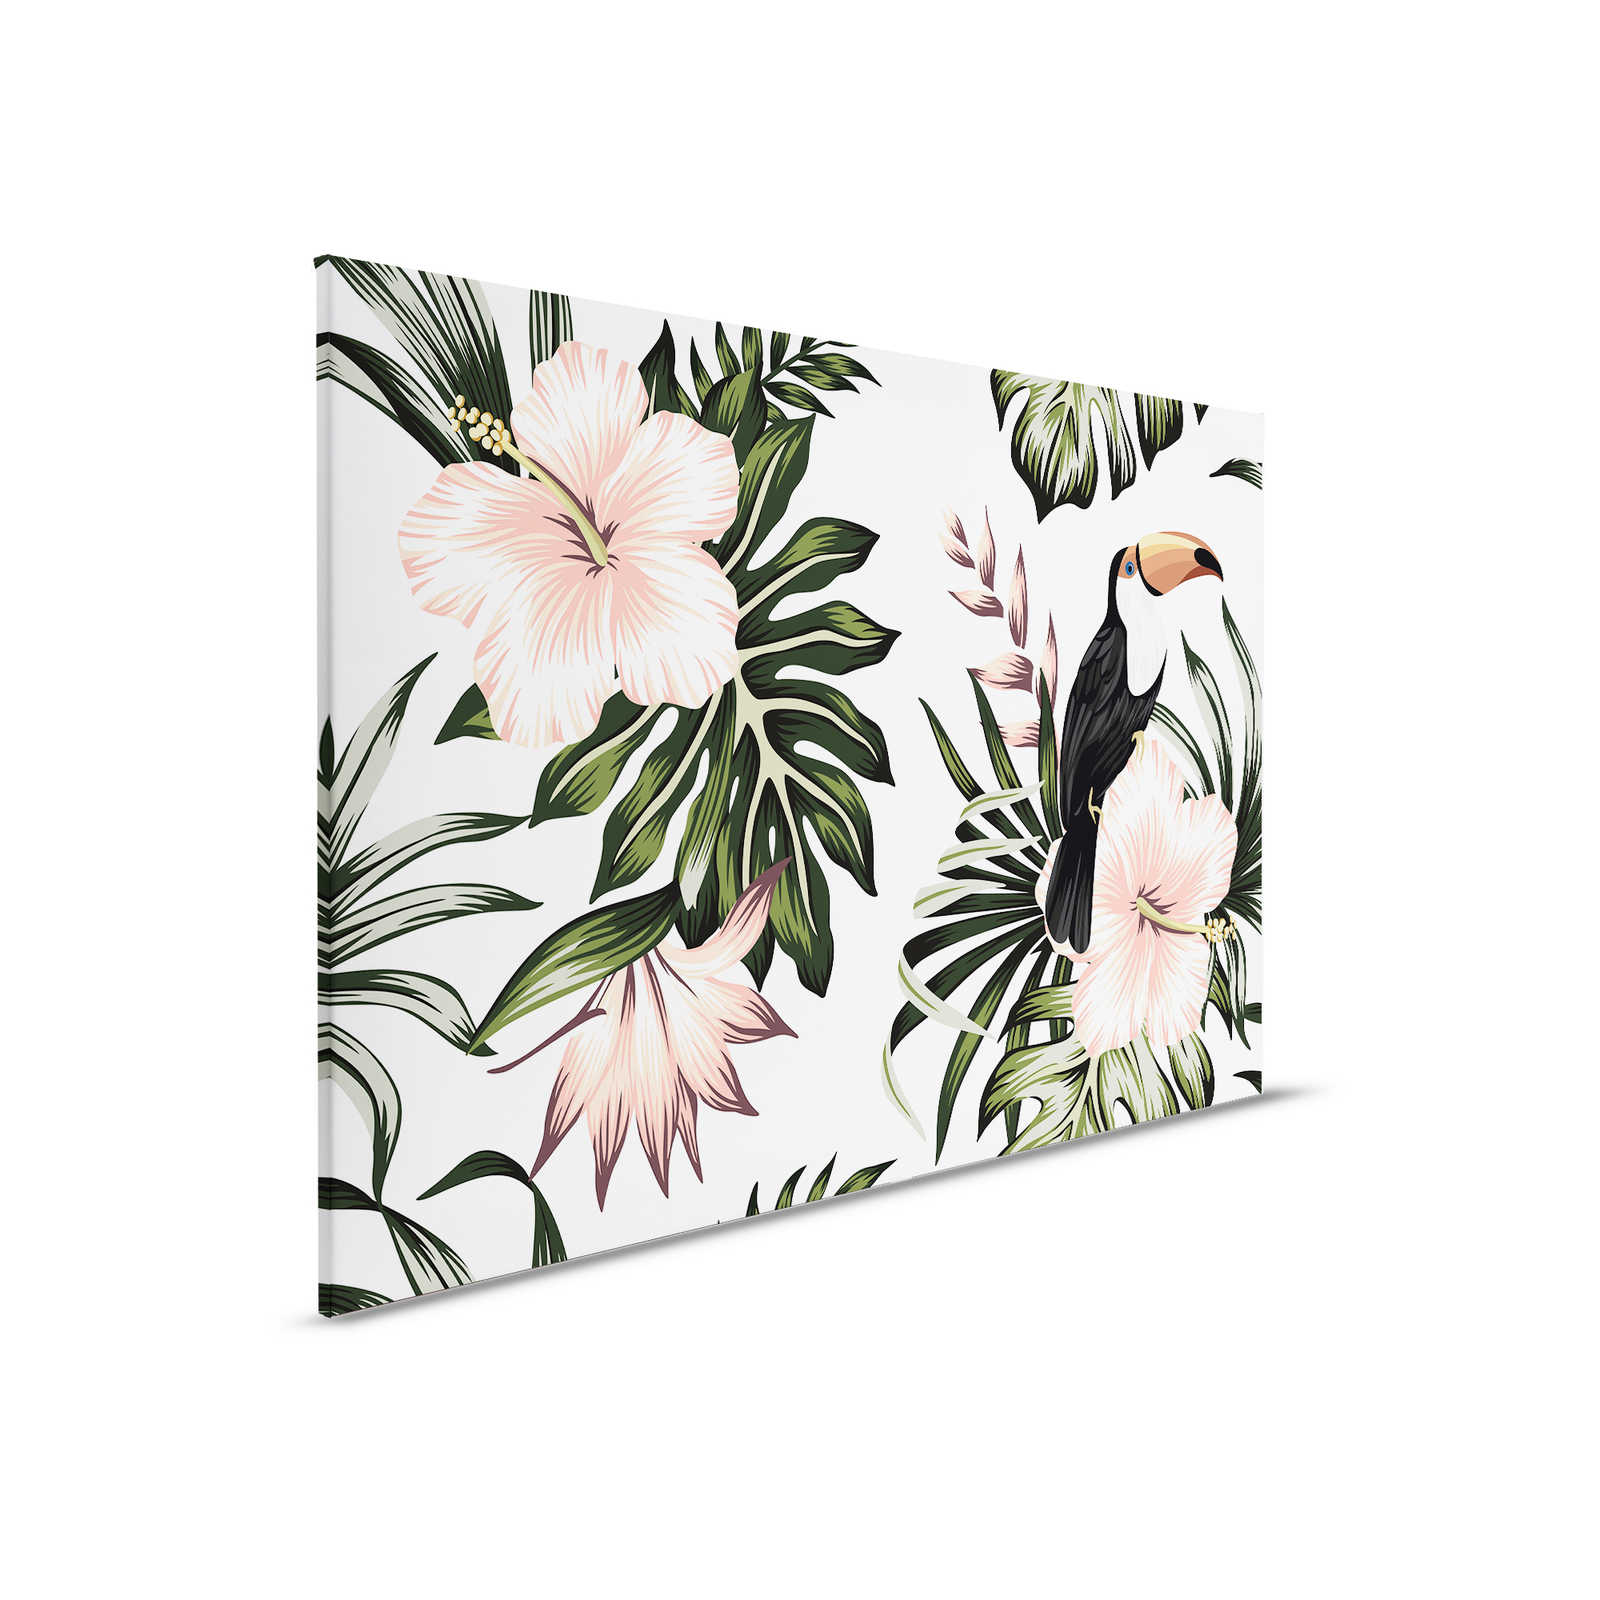 Leinwand mit Dschungelpflanzen und Pelikan | Weiß, Rosa, Grün – 0,90 m x 0,60 m
